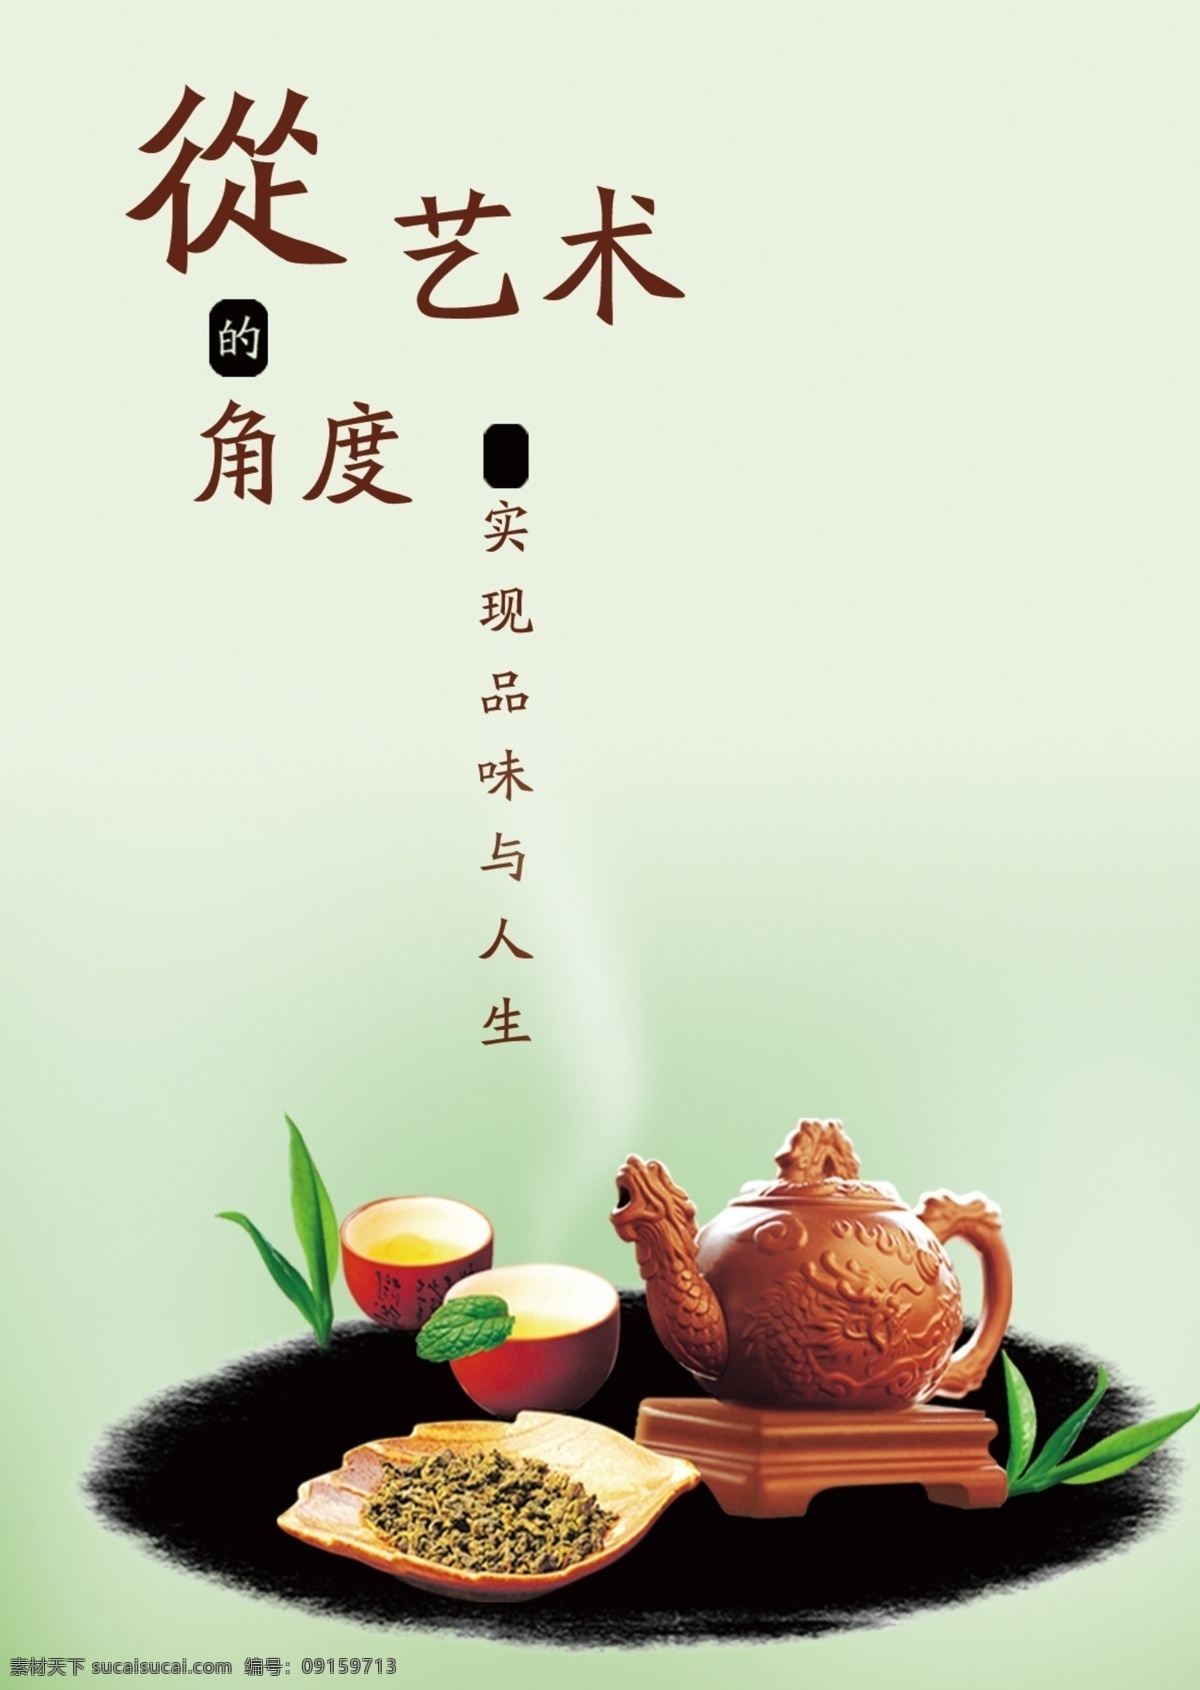 杯子 茶 茶杯 茶道 茶文化 茶叶 茶艺 模板下载 绿茶 中国文化 铁观音 古茶 品味人生 其他模版 广告设计模板 源文件 矢量图 日常生活